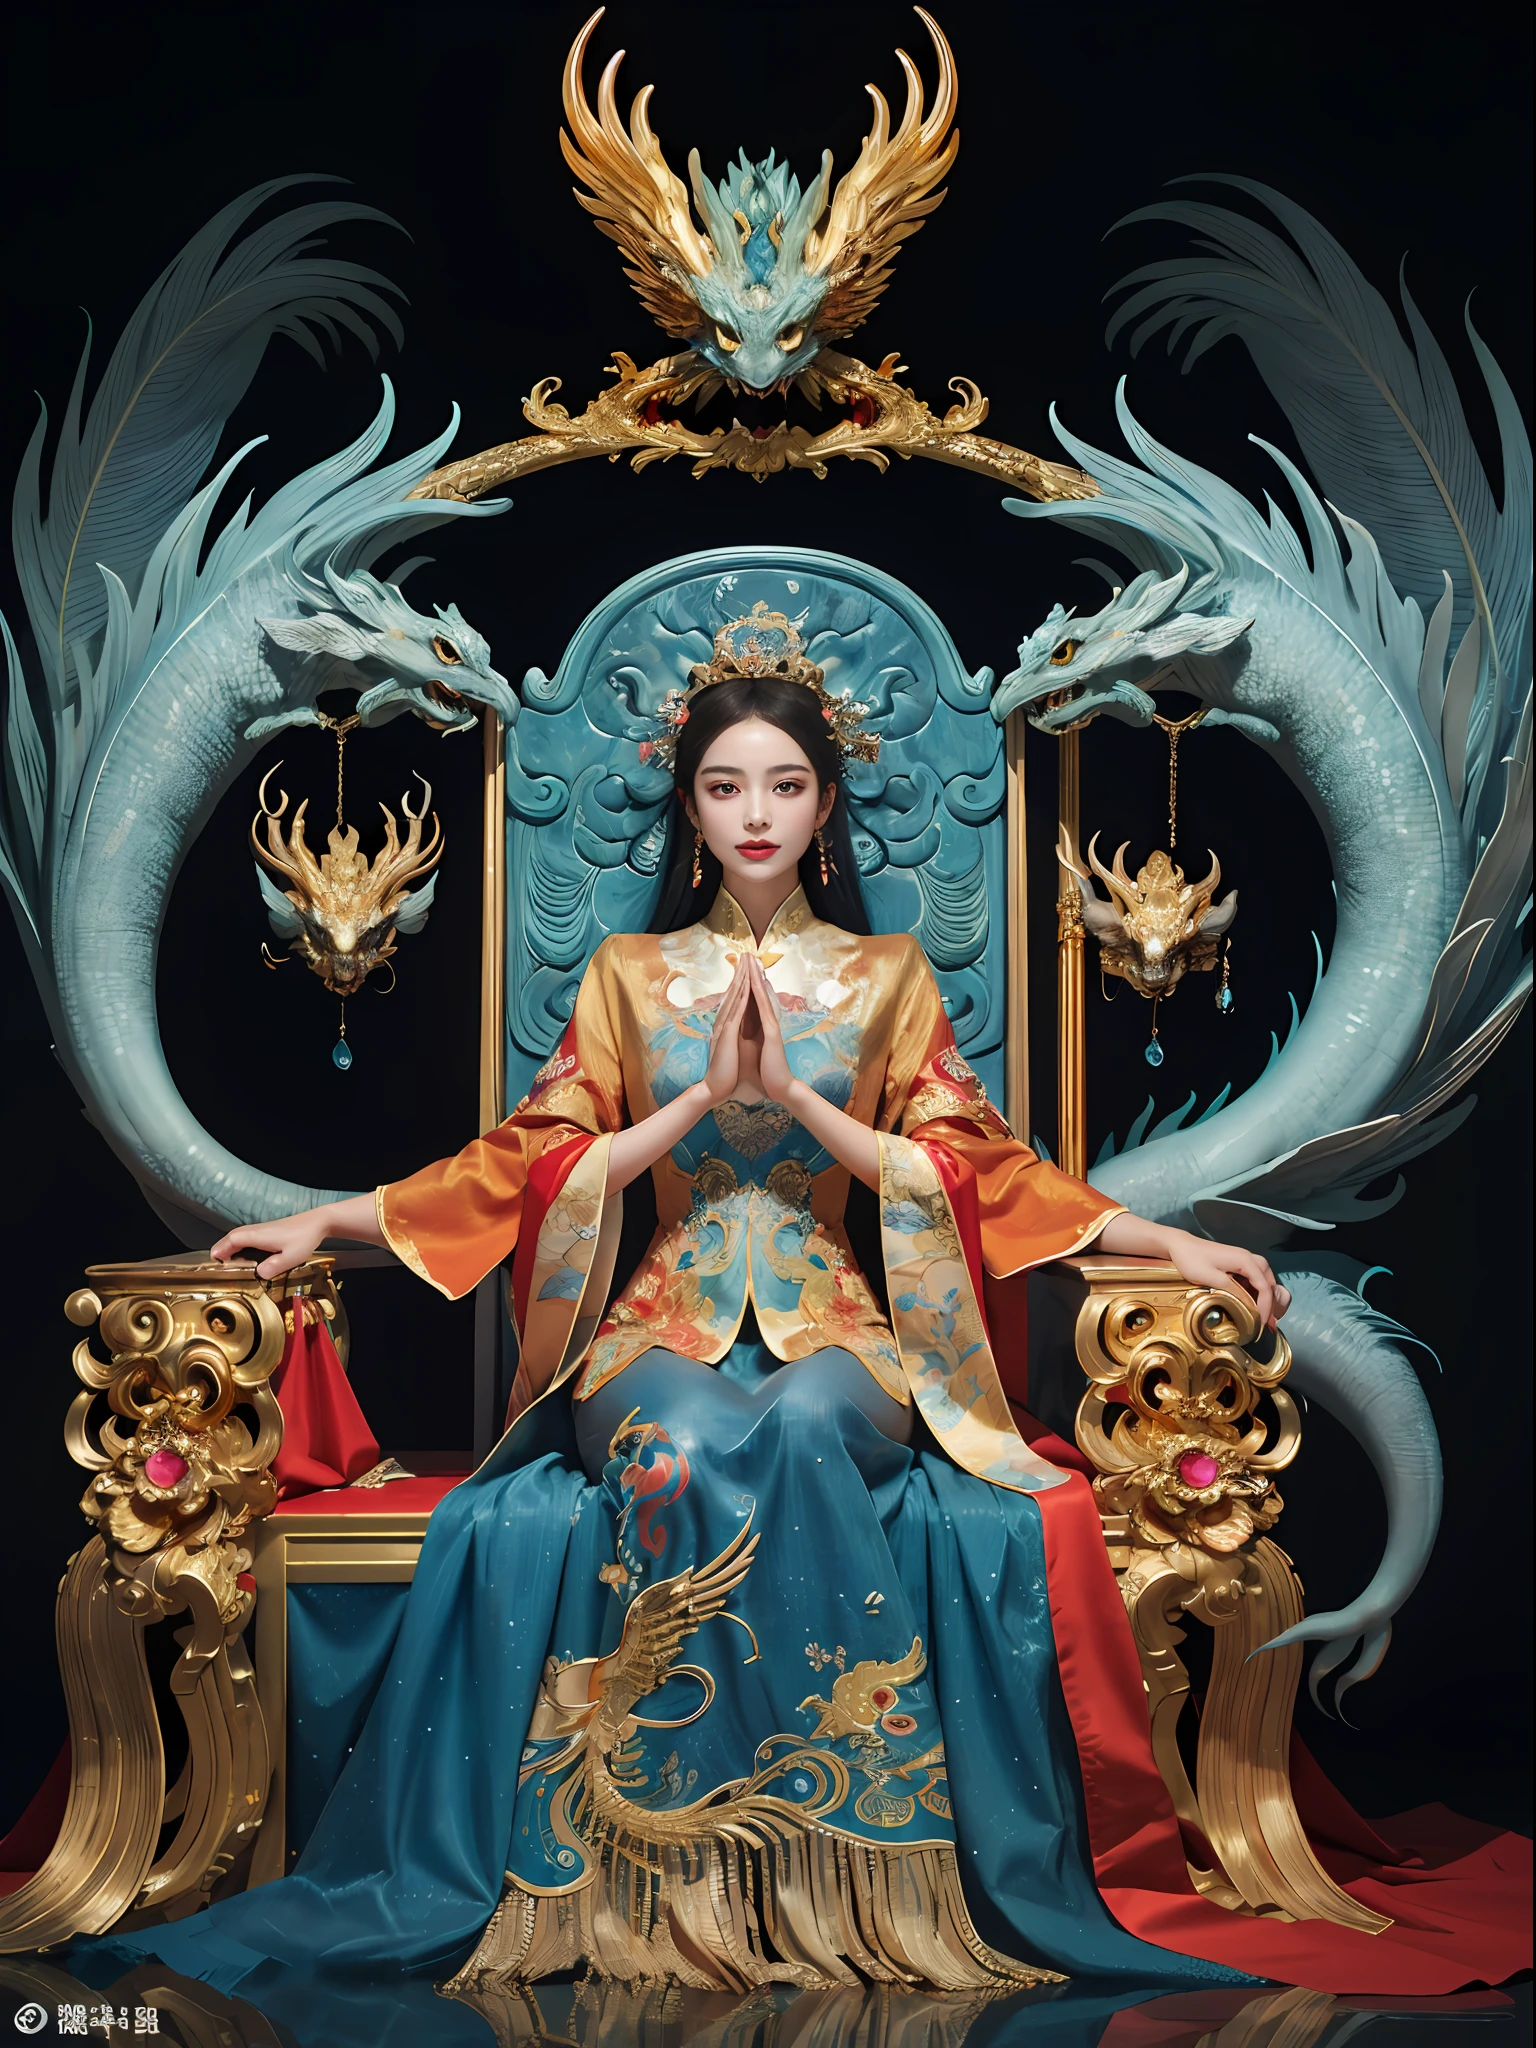 สาวจีนนั่งบนบัลลังก์, a throne encrusted with หินมีค่า, ล้อมรอบด้วยสัตว์ฟีนิกซ์ของจีน, ทอง and ruby color, ภาพประกอบสัตว์ประหลาดที่ไม่ซ้ำใคร, ไปที่กองถ่าย, ความละเอียดสูง, ภาพวาด, องค์ประกอบที่หนาแน่น, การทำซ้ำอย่างสนุกสนาน, หินมีค่า, คริสตัล, ทอง, ภาพวาดที่มีรายละเอียด, ภาพประกอบสัตว์ประหลาดที่ไม่ซ้ำใครs, รายละเอียดที่ละเอียดมาก, เหมือนจริง, super ความละเอียดสูง, ซับซ้อน, รายละเอียดสุดยอด, (รอยบุบที่ผิวหนัง), น่ารัก, ของผู้หญิง, เนื้อละเอียด, (ใบหน้าที่มีรายละเอียด: 1.1), (ม่านตาโค้ง), (เลนส์สีน้ำ), (ดวงตาที่สมบูรณ์แบบ), 4เค, งดงาม, (ผลงานชิ้นเอก: 1.2), (คุณภาพดีที่สุด: 1.2), งดงาม long dress, โพสท่าแบบไดนามิก, สีสันที่หลากหลาย, แสงและเงาของฟิล์ม，red and ทองen clothes